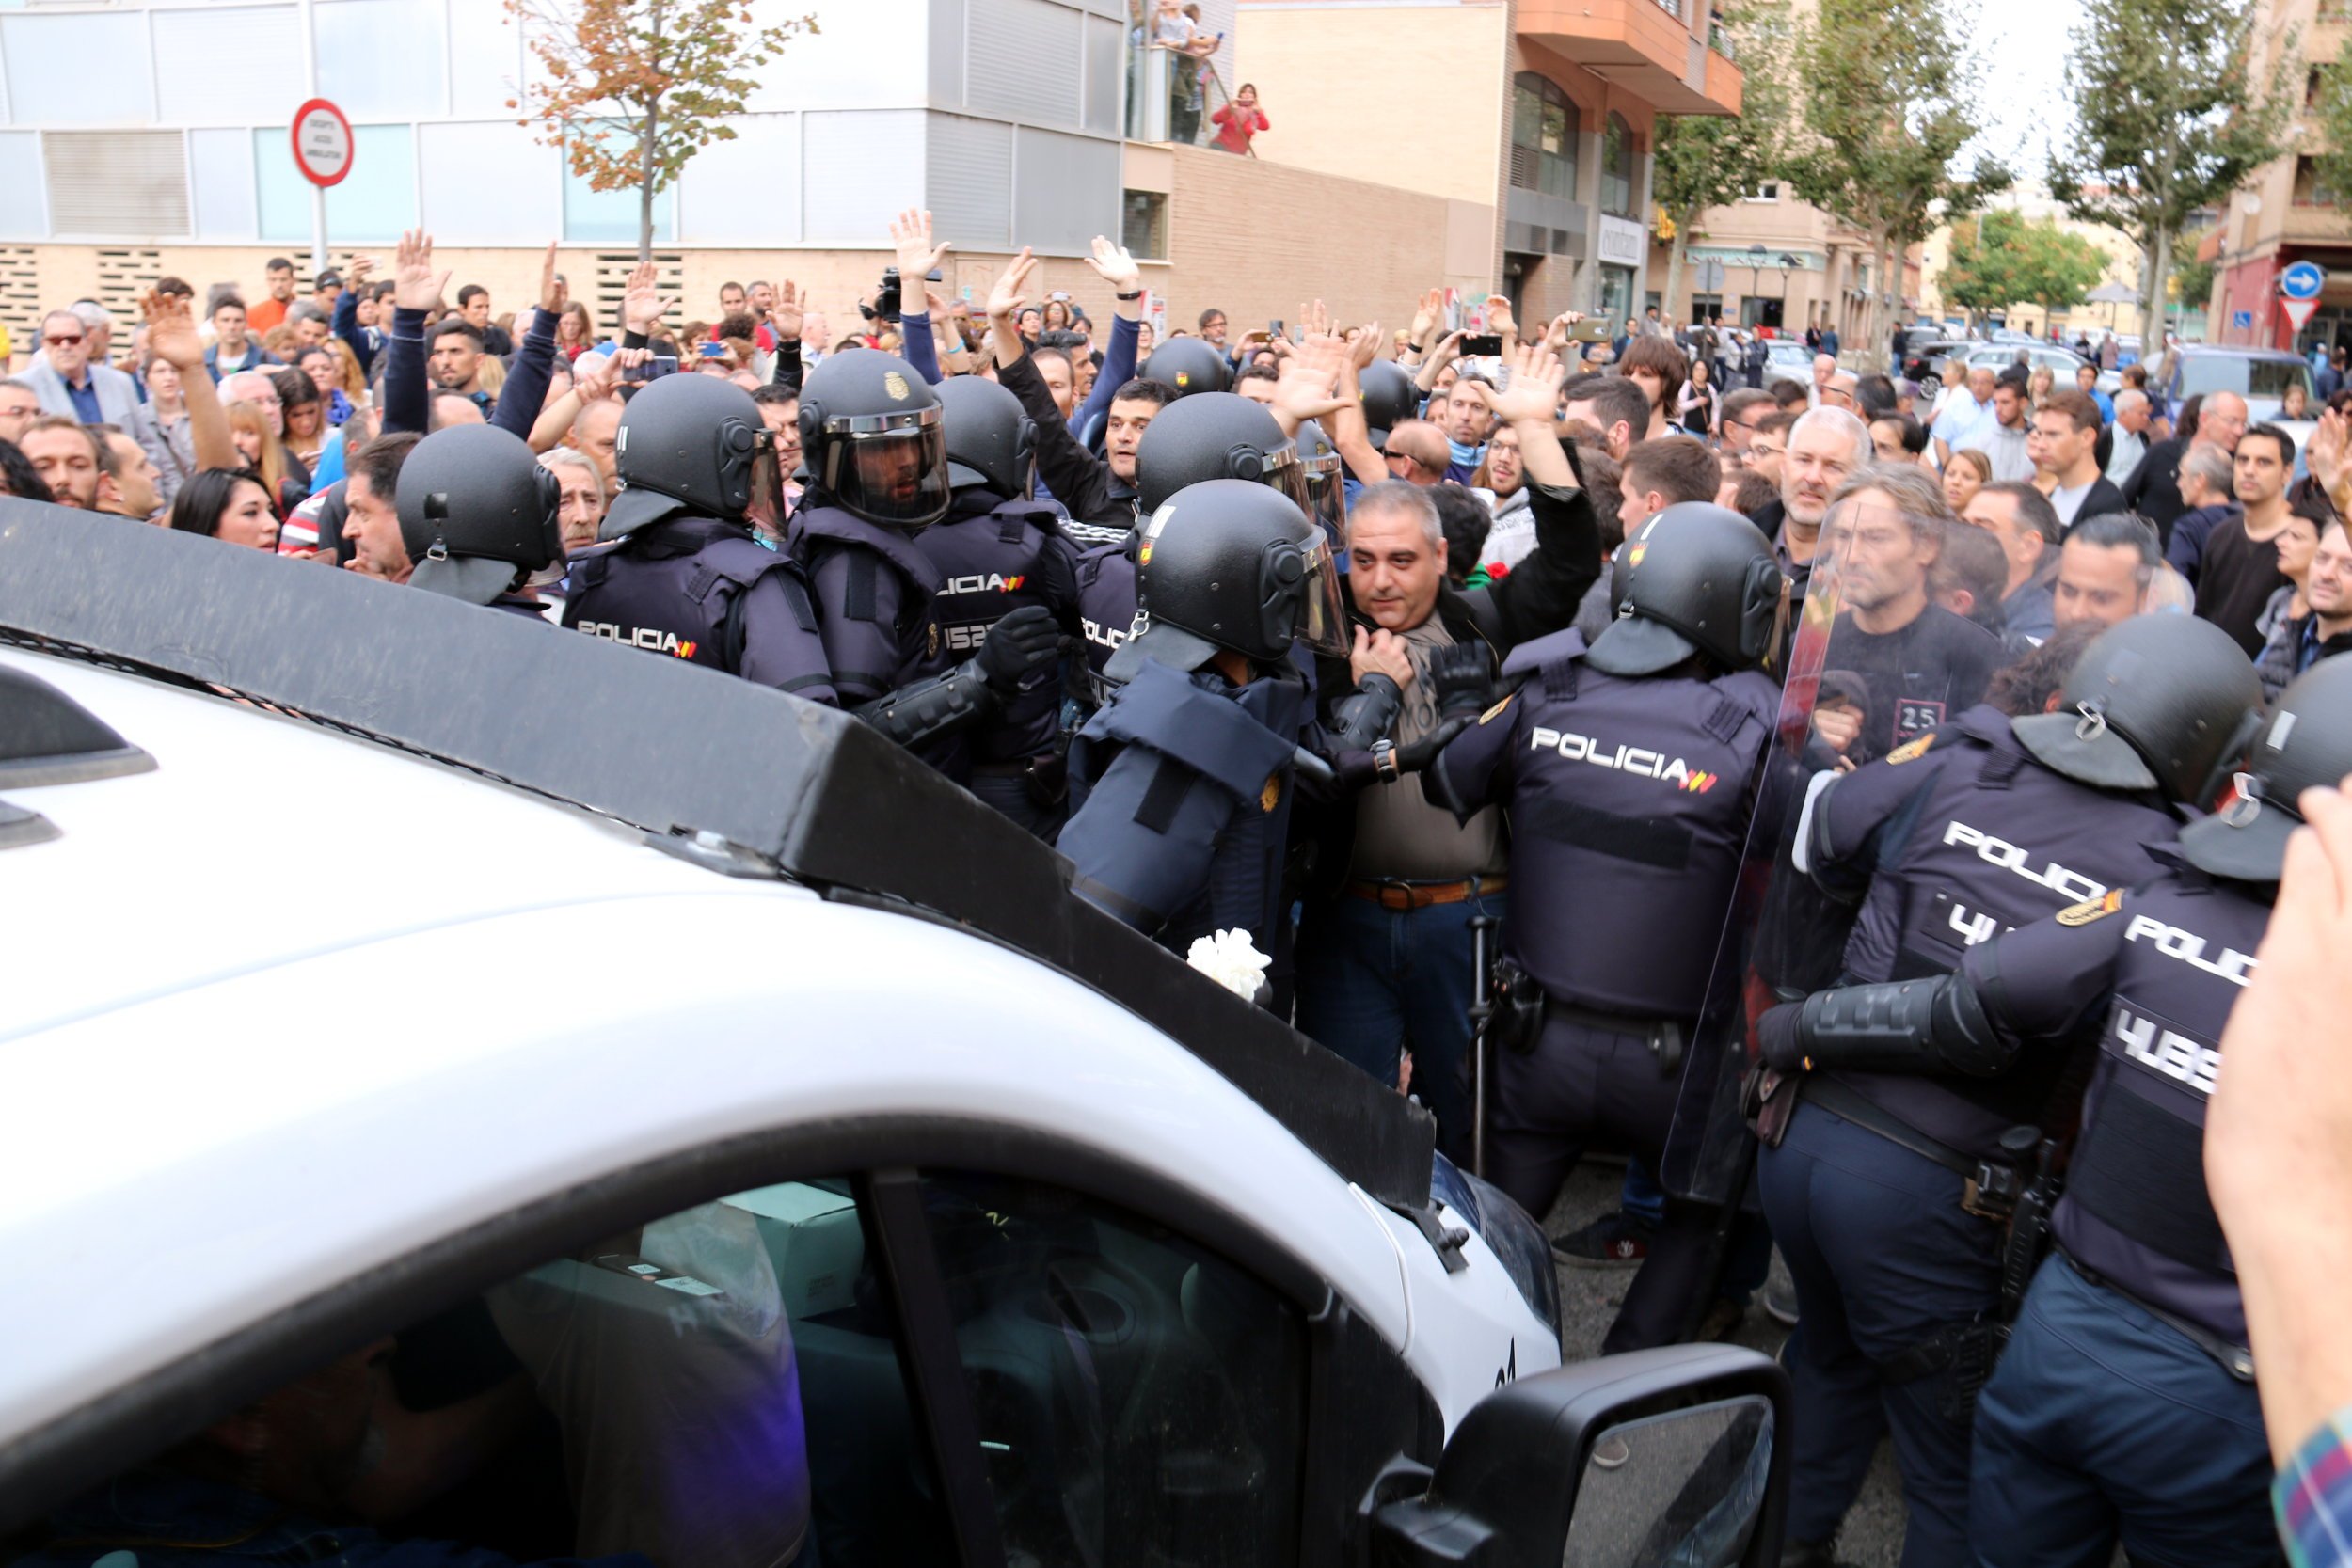 A judici un policia espanyol acusat d'agredir un home que va patir un infart a Lleida l'1-O